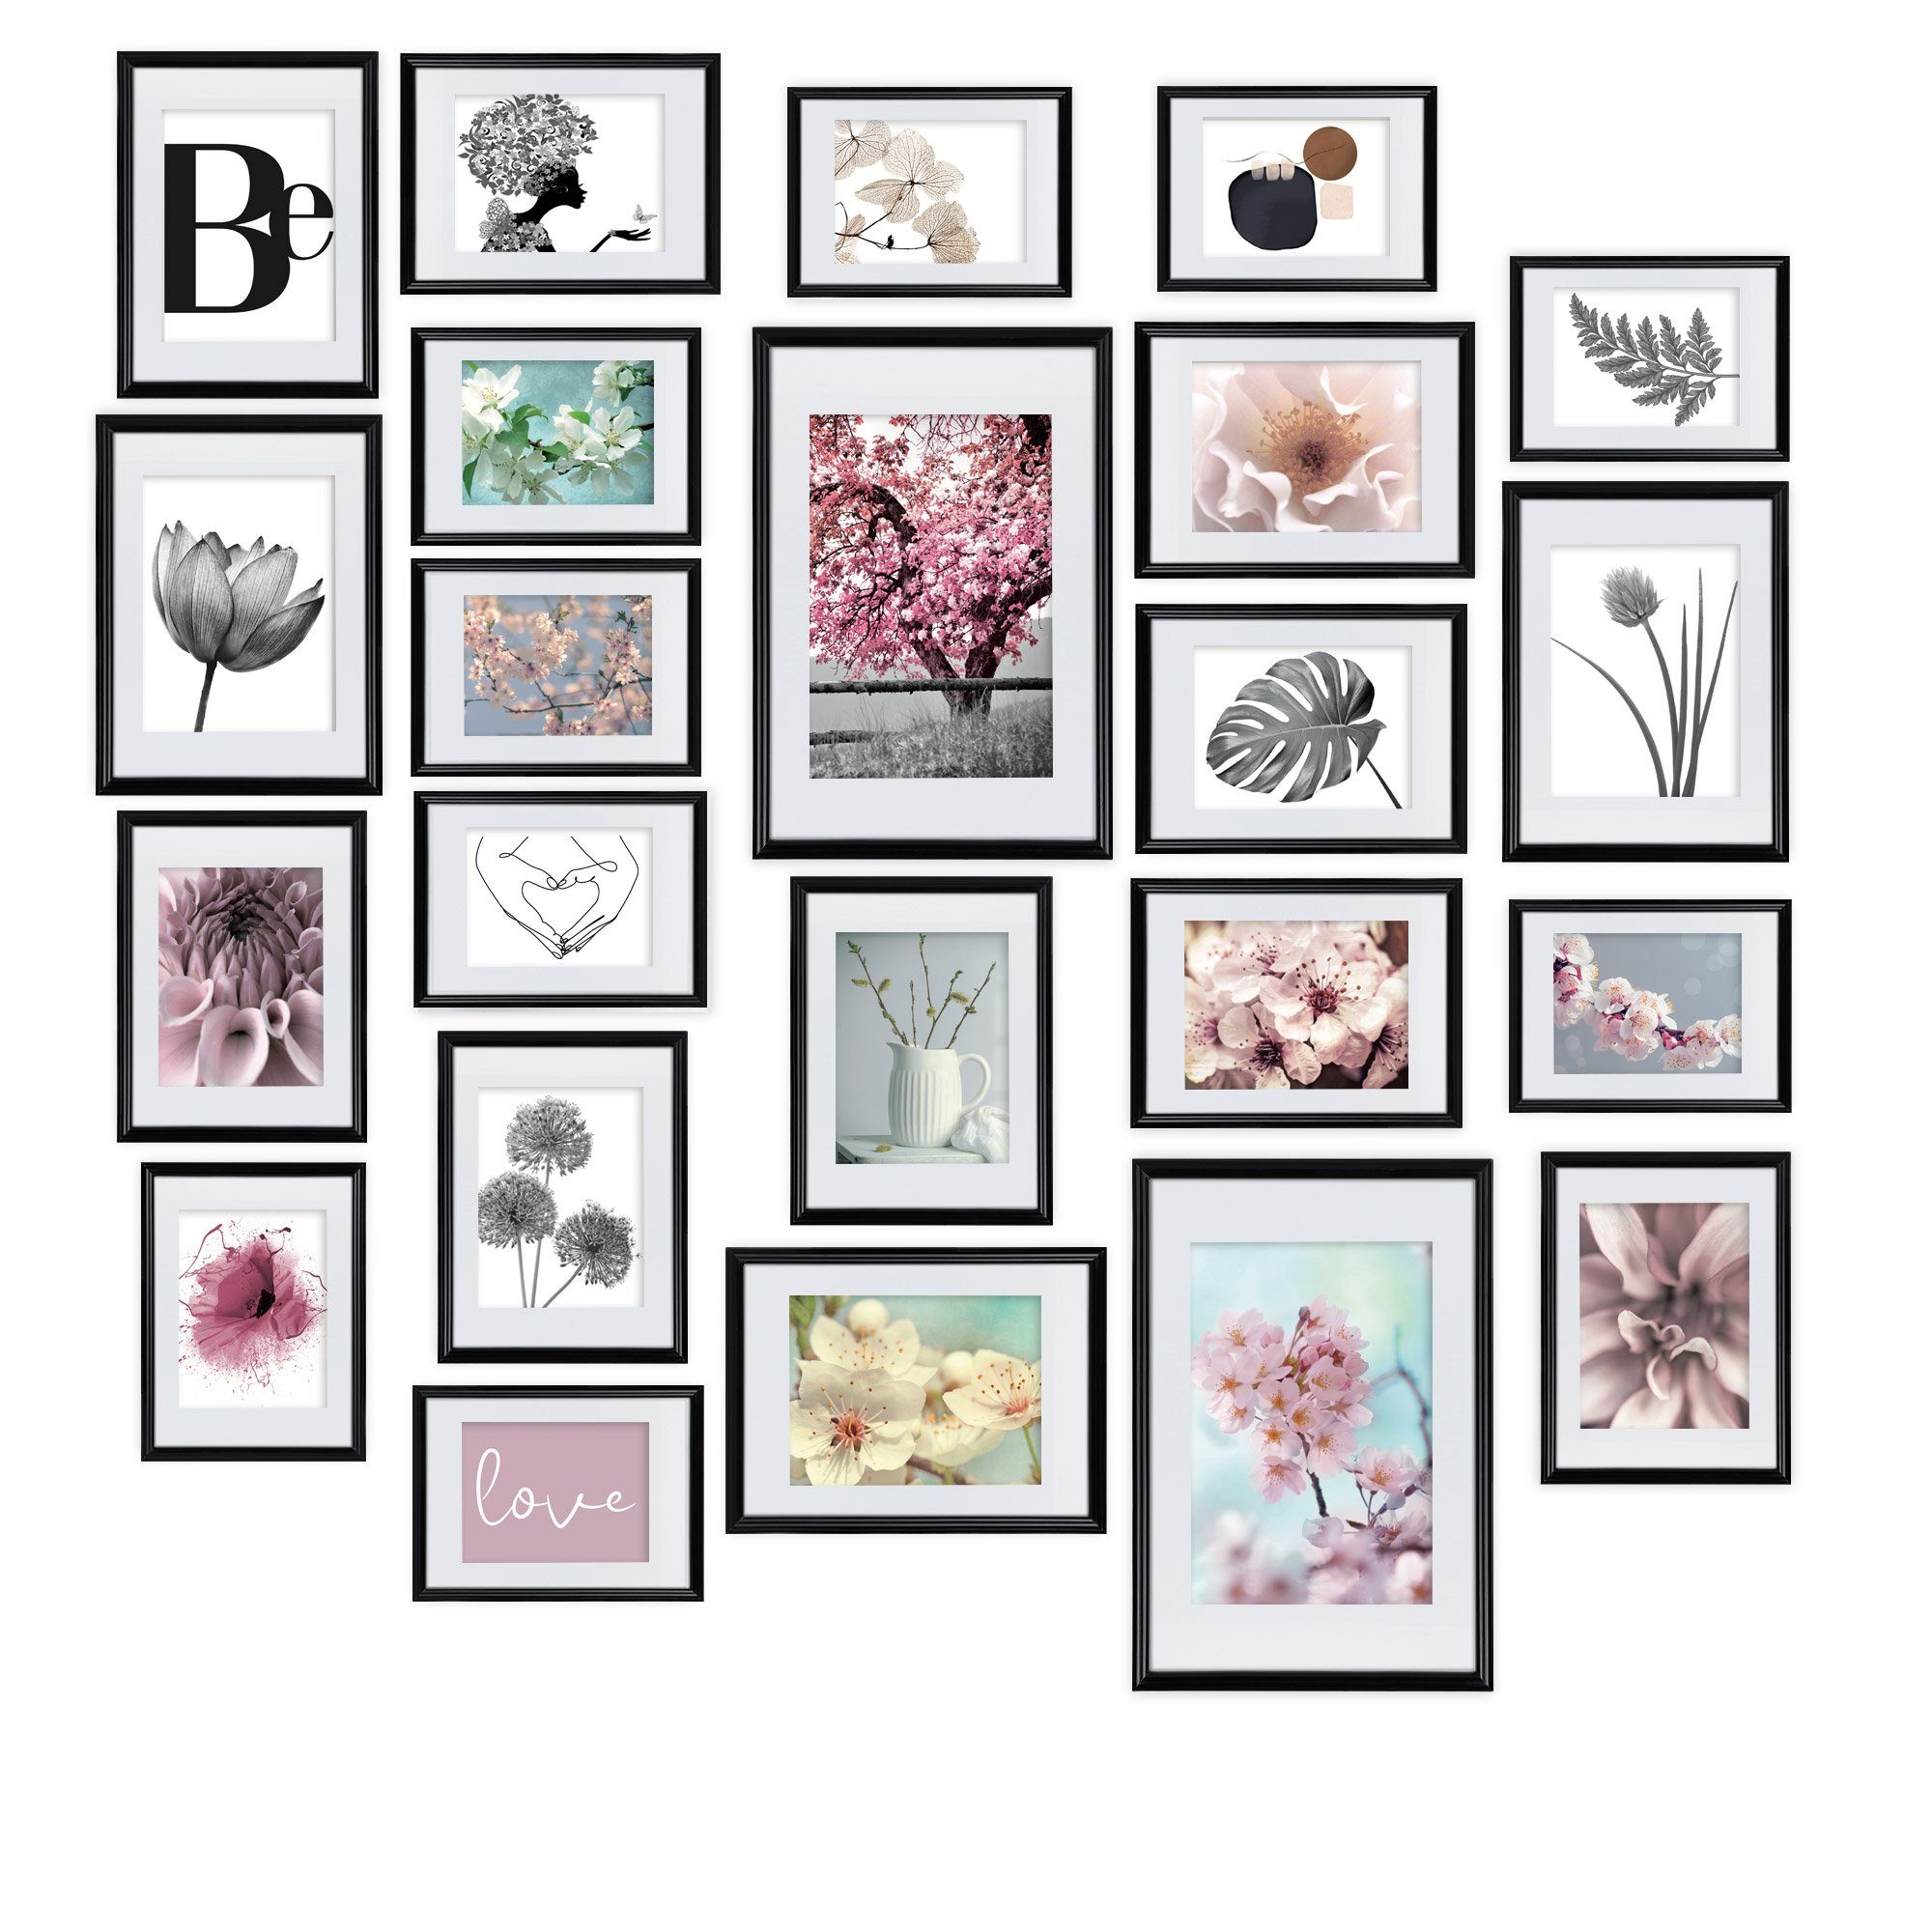 bomoe Bilderrahmen Blossom, 24er Set Fotowand Collage Fotorahmen mit Passepartout